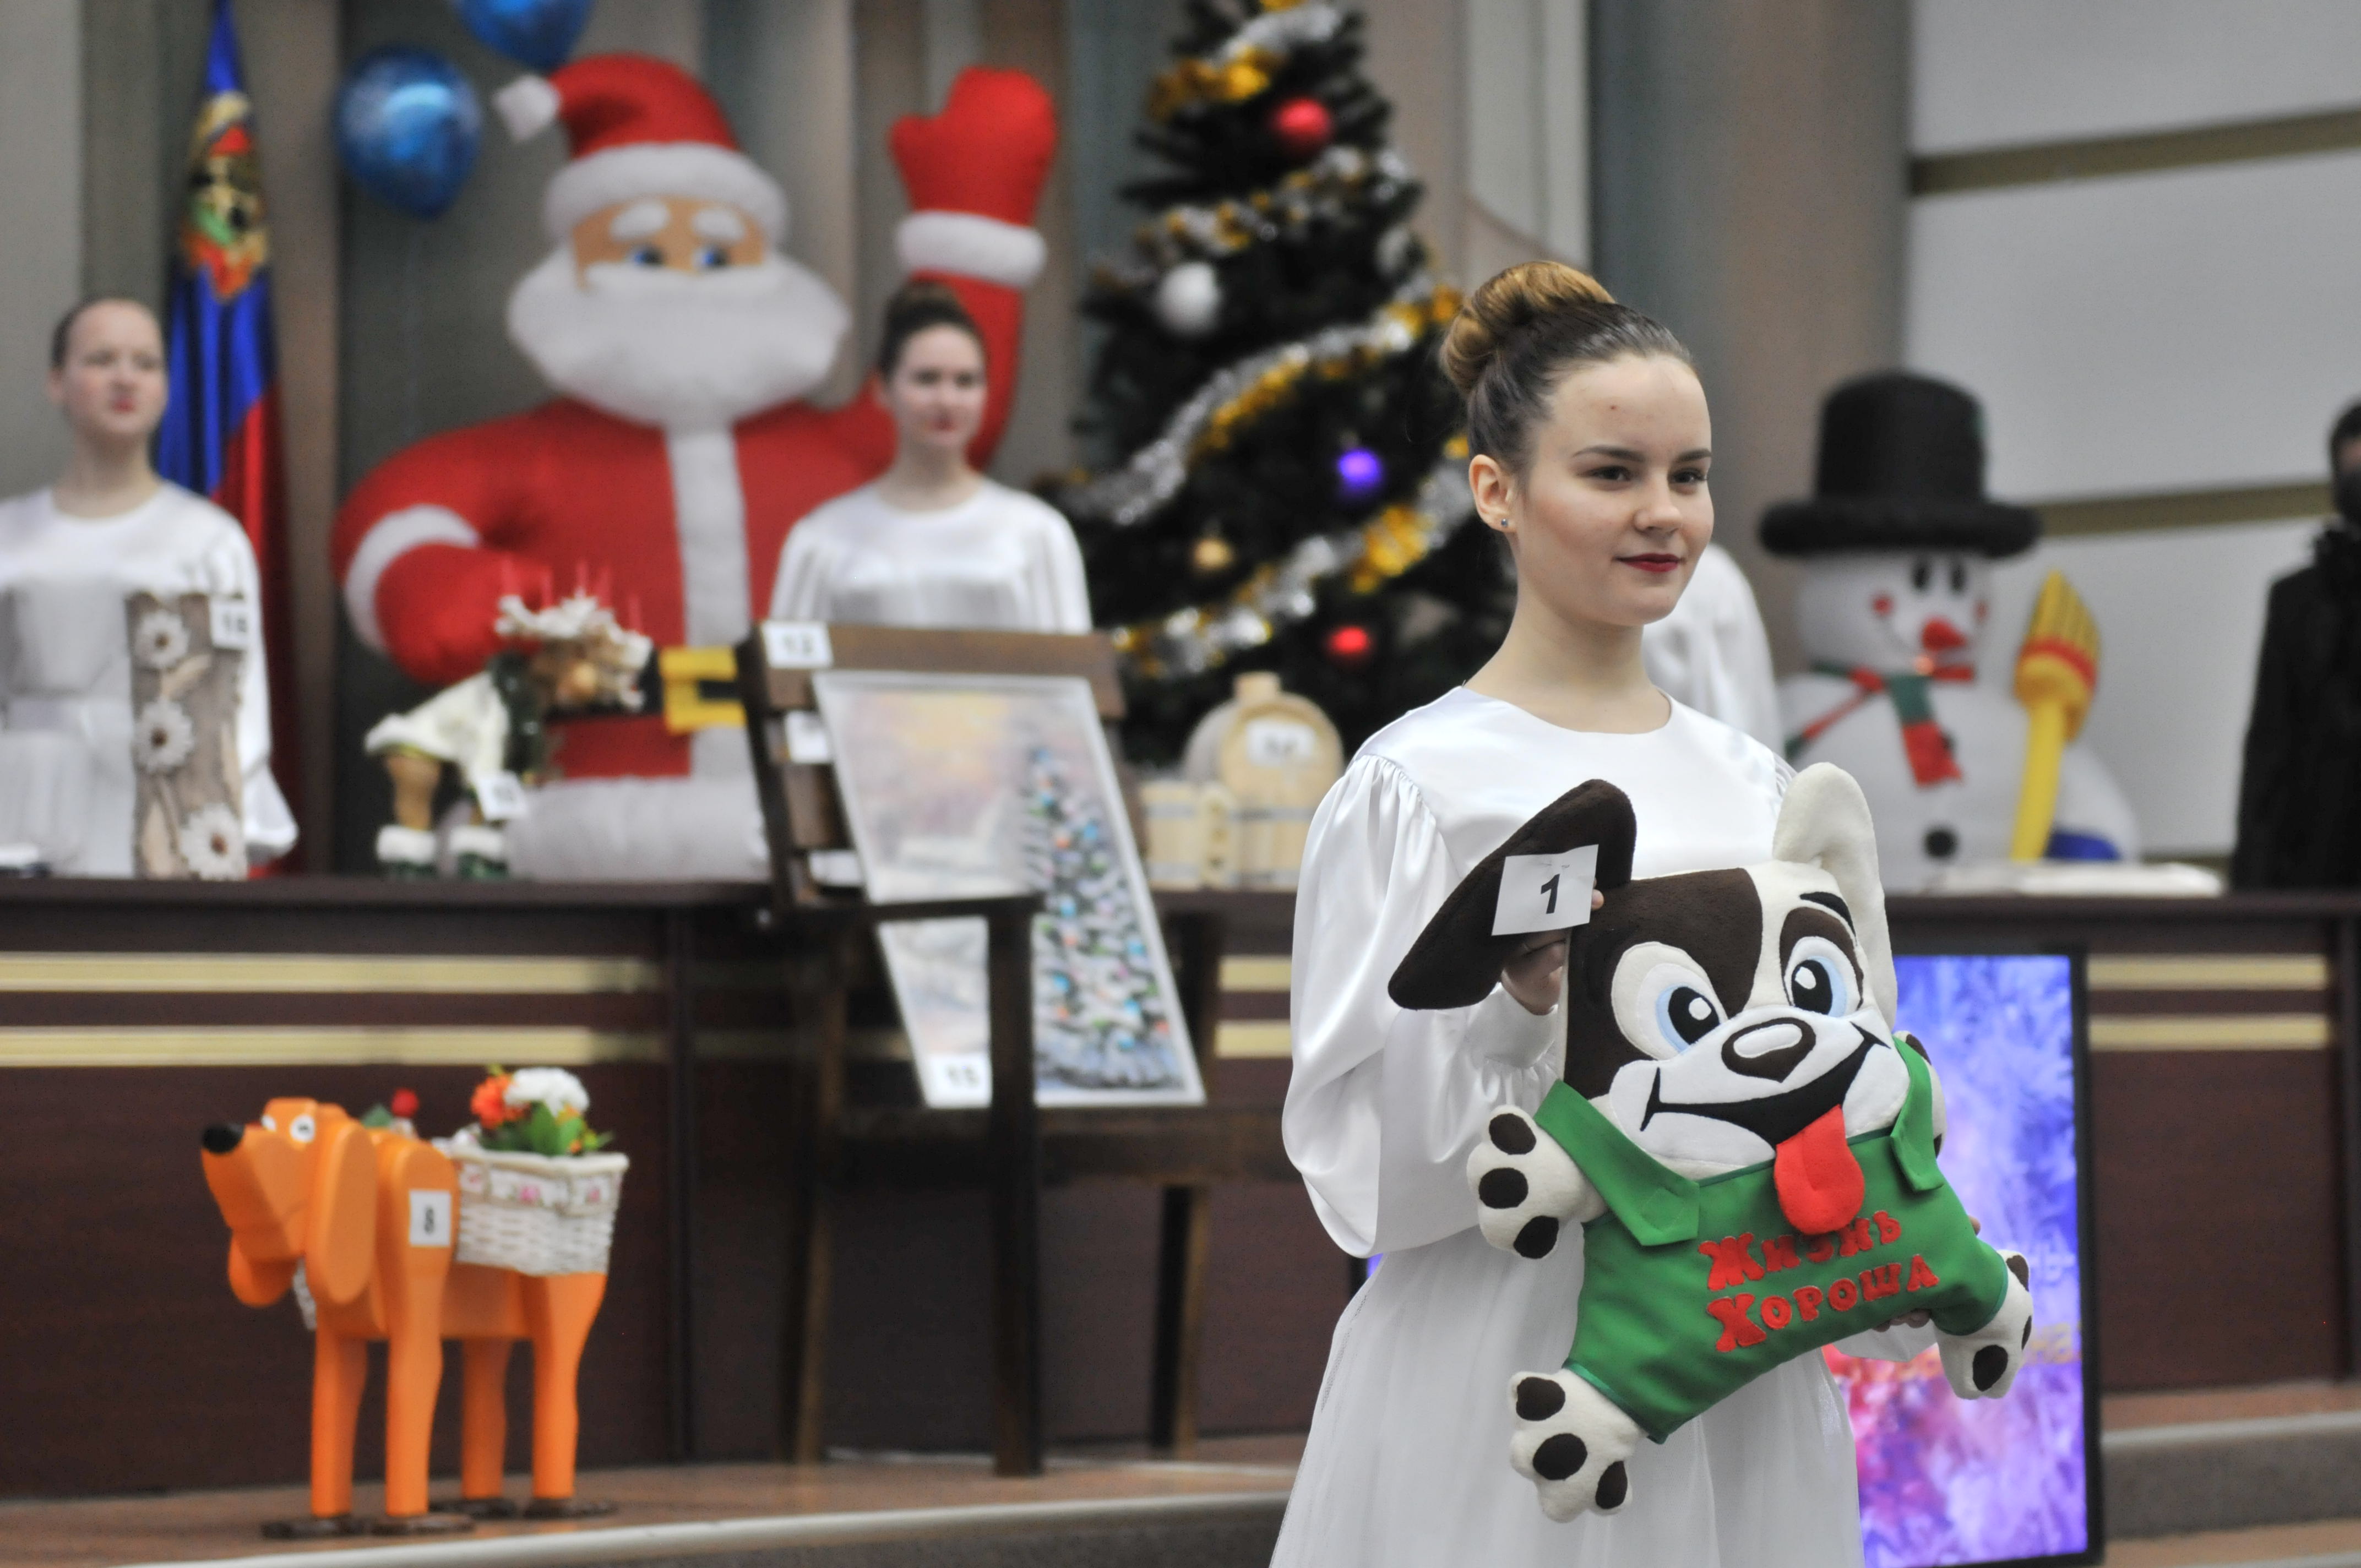 Более 650 тысяч рублей выручено на Рождественском благотворительном аукционе, который прошел 21 декабря 2017 г. в Администрации Кемеровской области в рамках акции «Кузбасс – территория добра»